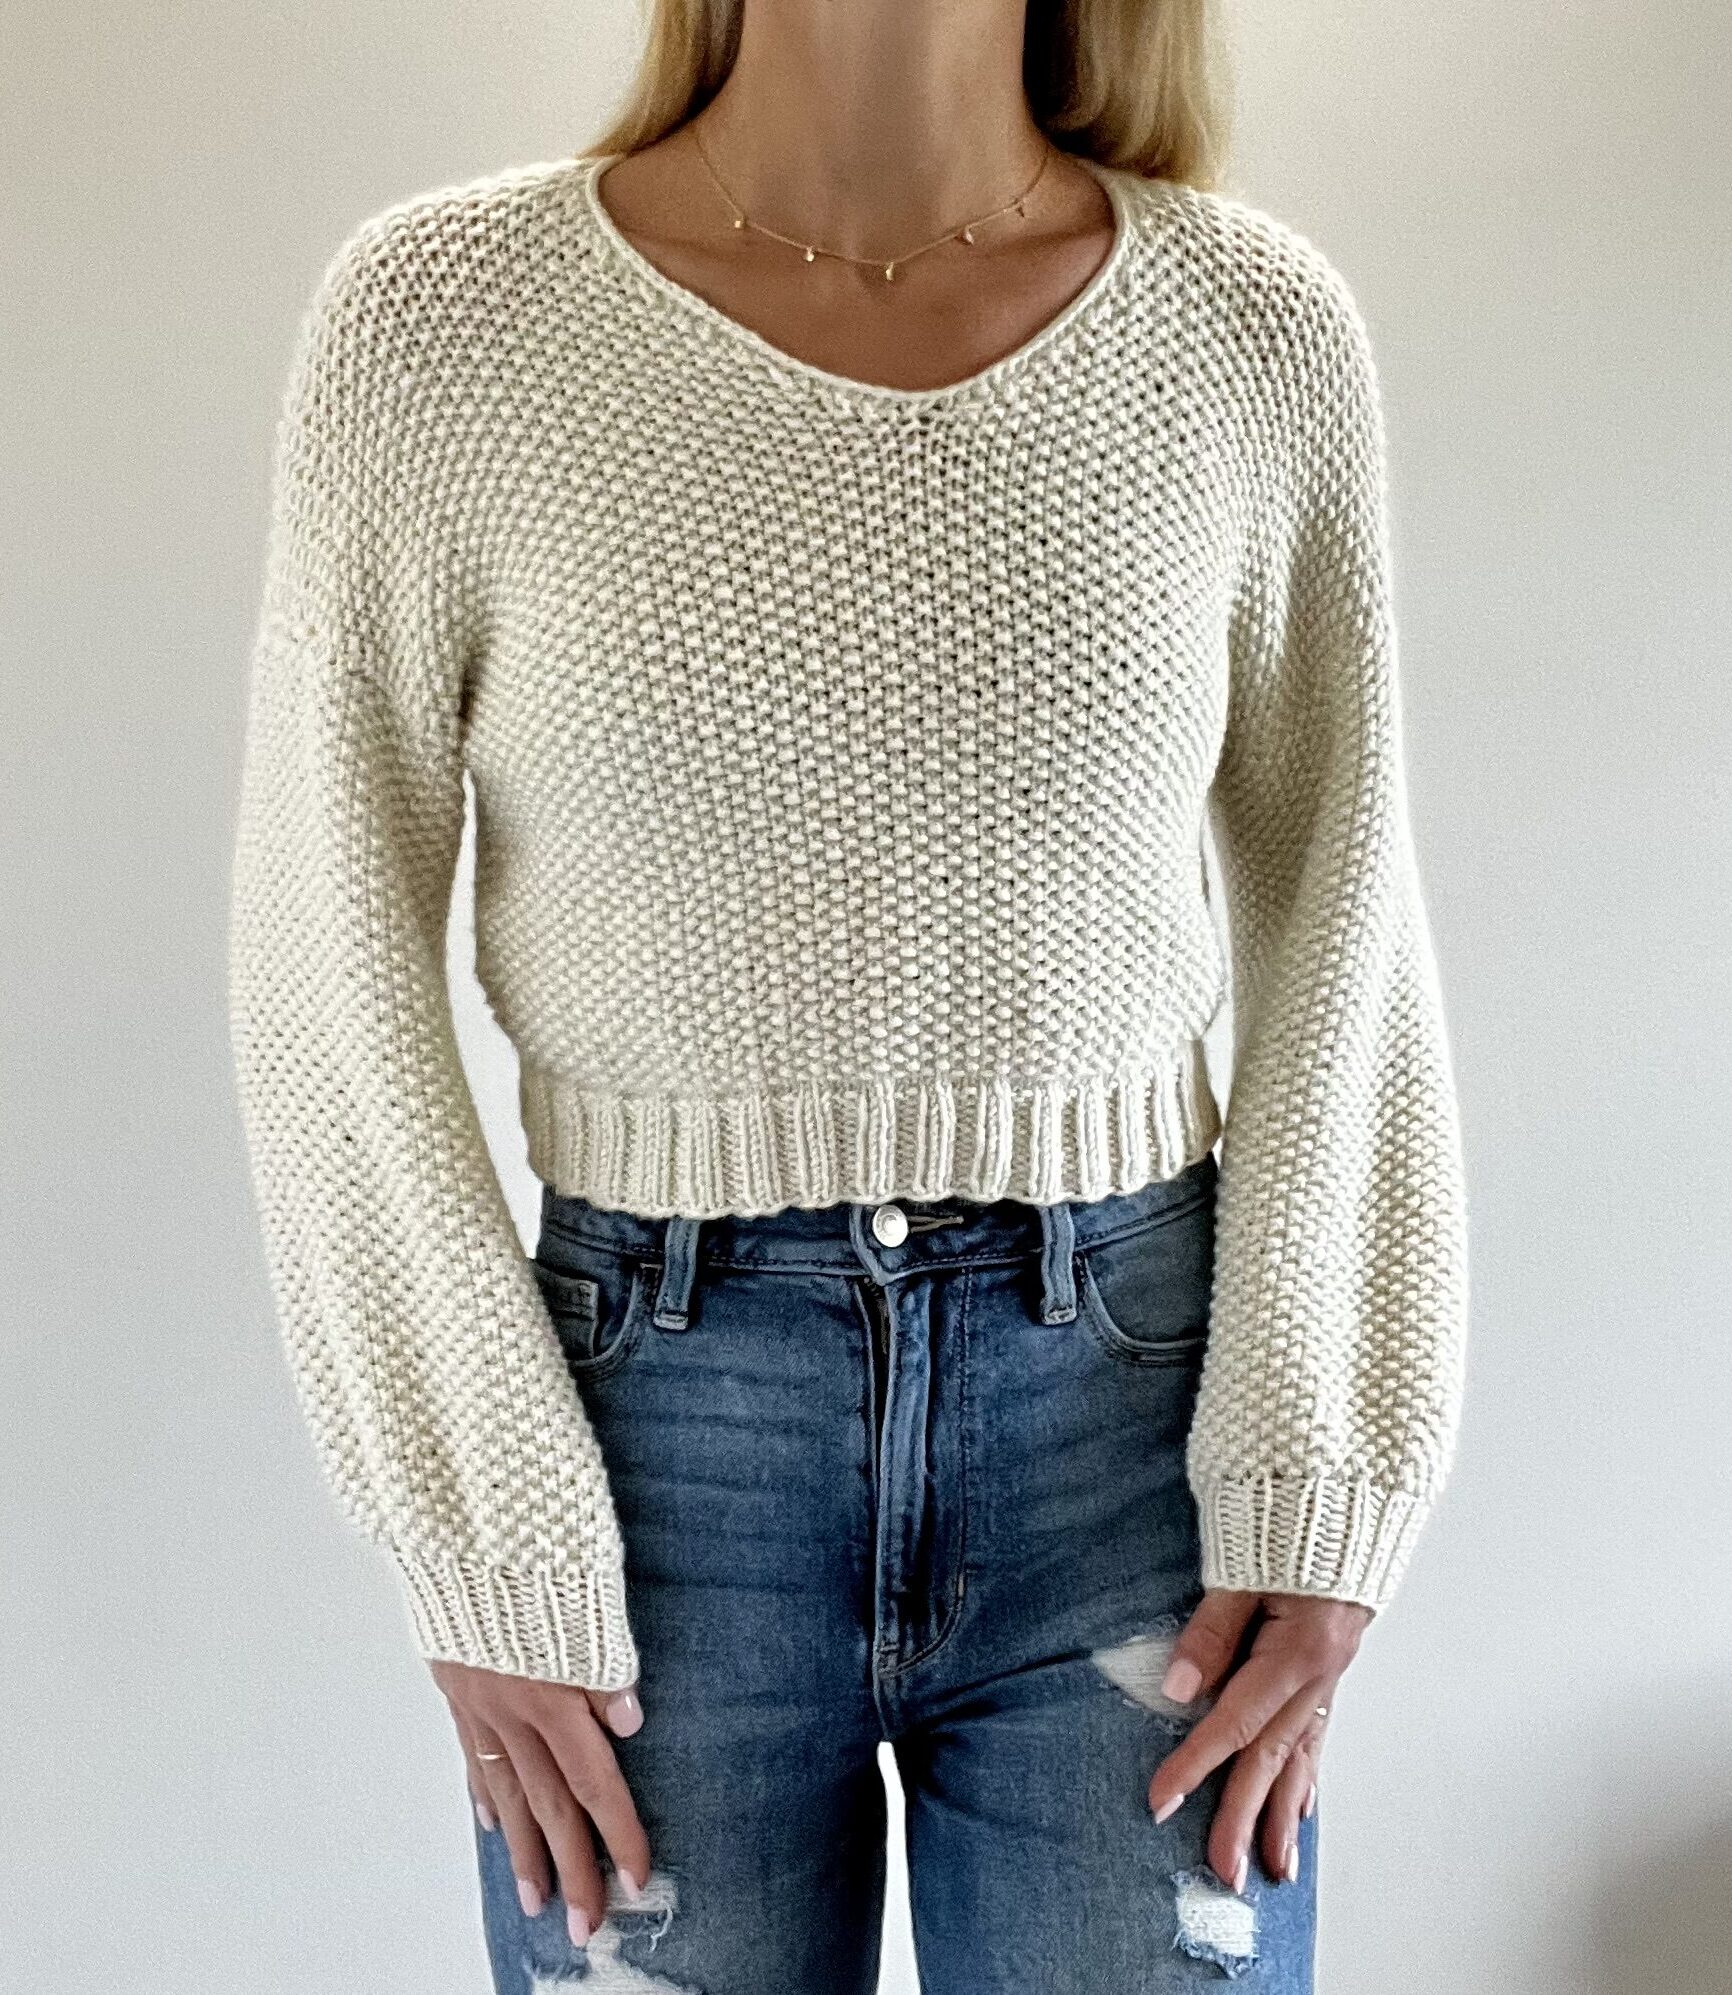 Cropped Sweater Knitting Pattern